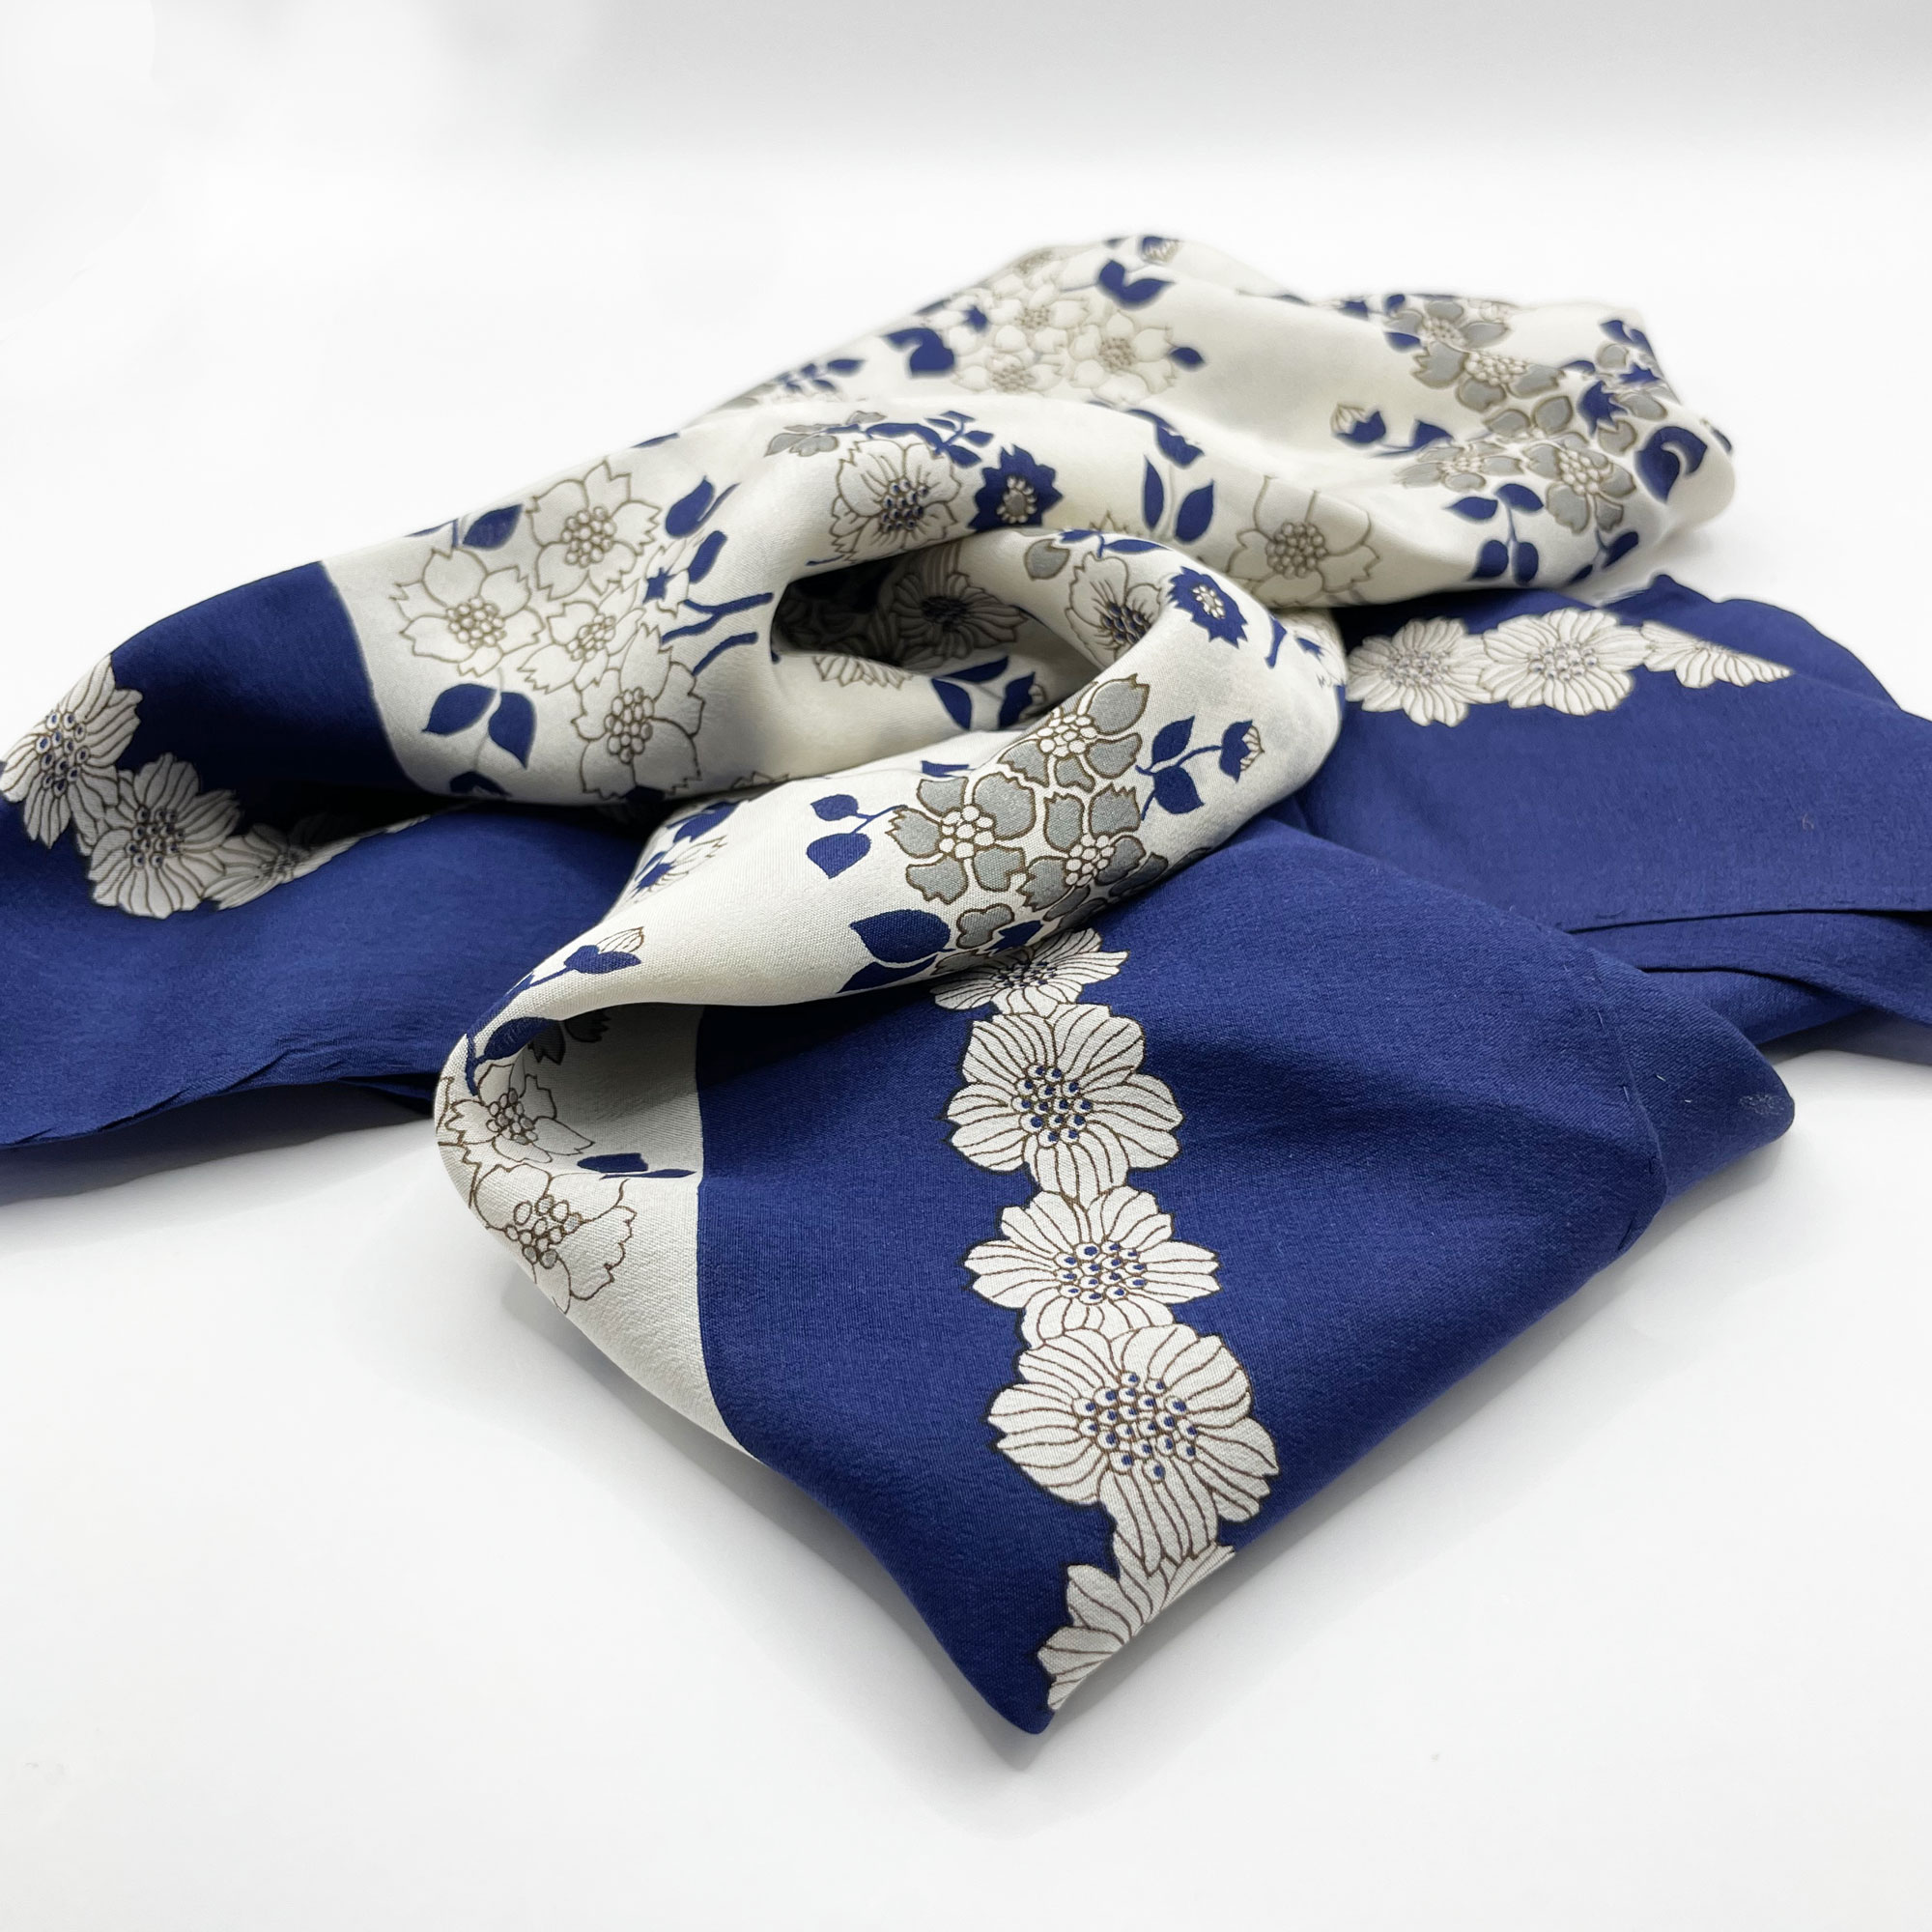 1980s Anne Klein silk scarf